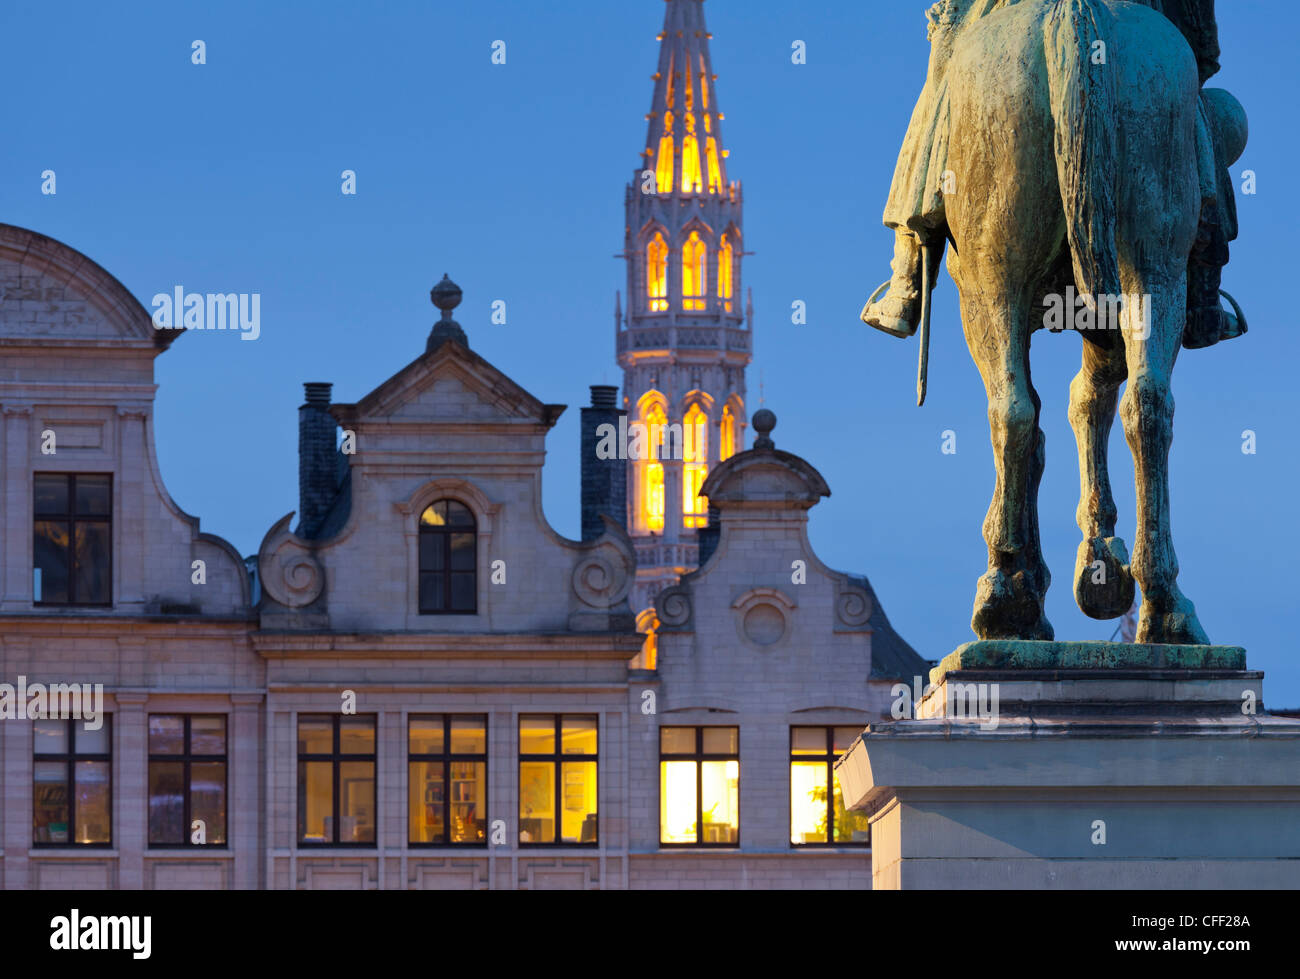 Monument équestre et illuminé clocher dans la soirée, statue du roi Albert, Place de l'Albertine, Bruxelles, Belgique, Europ Banque D'Images